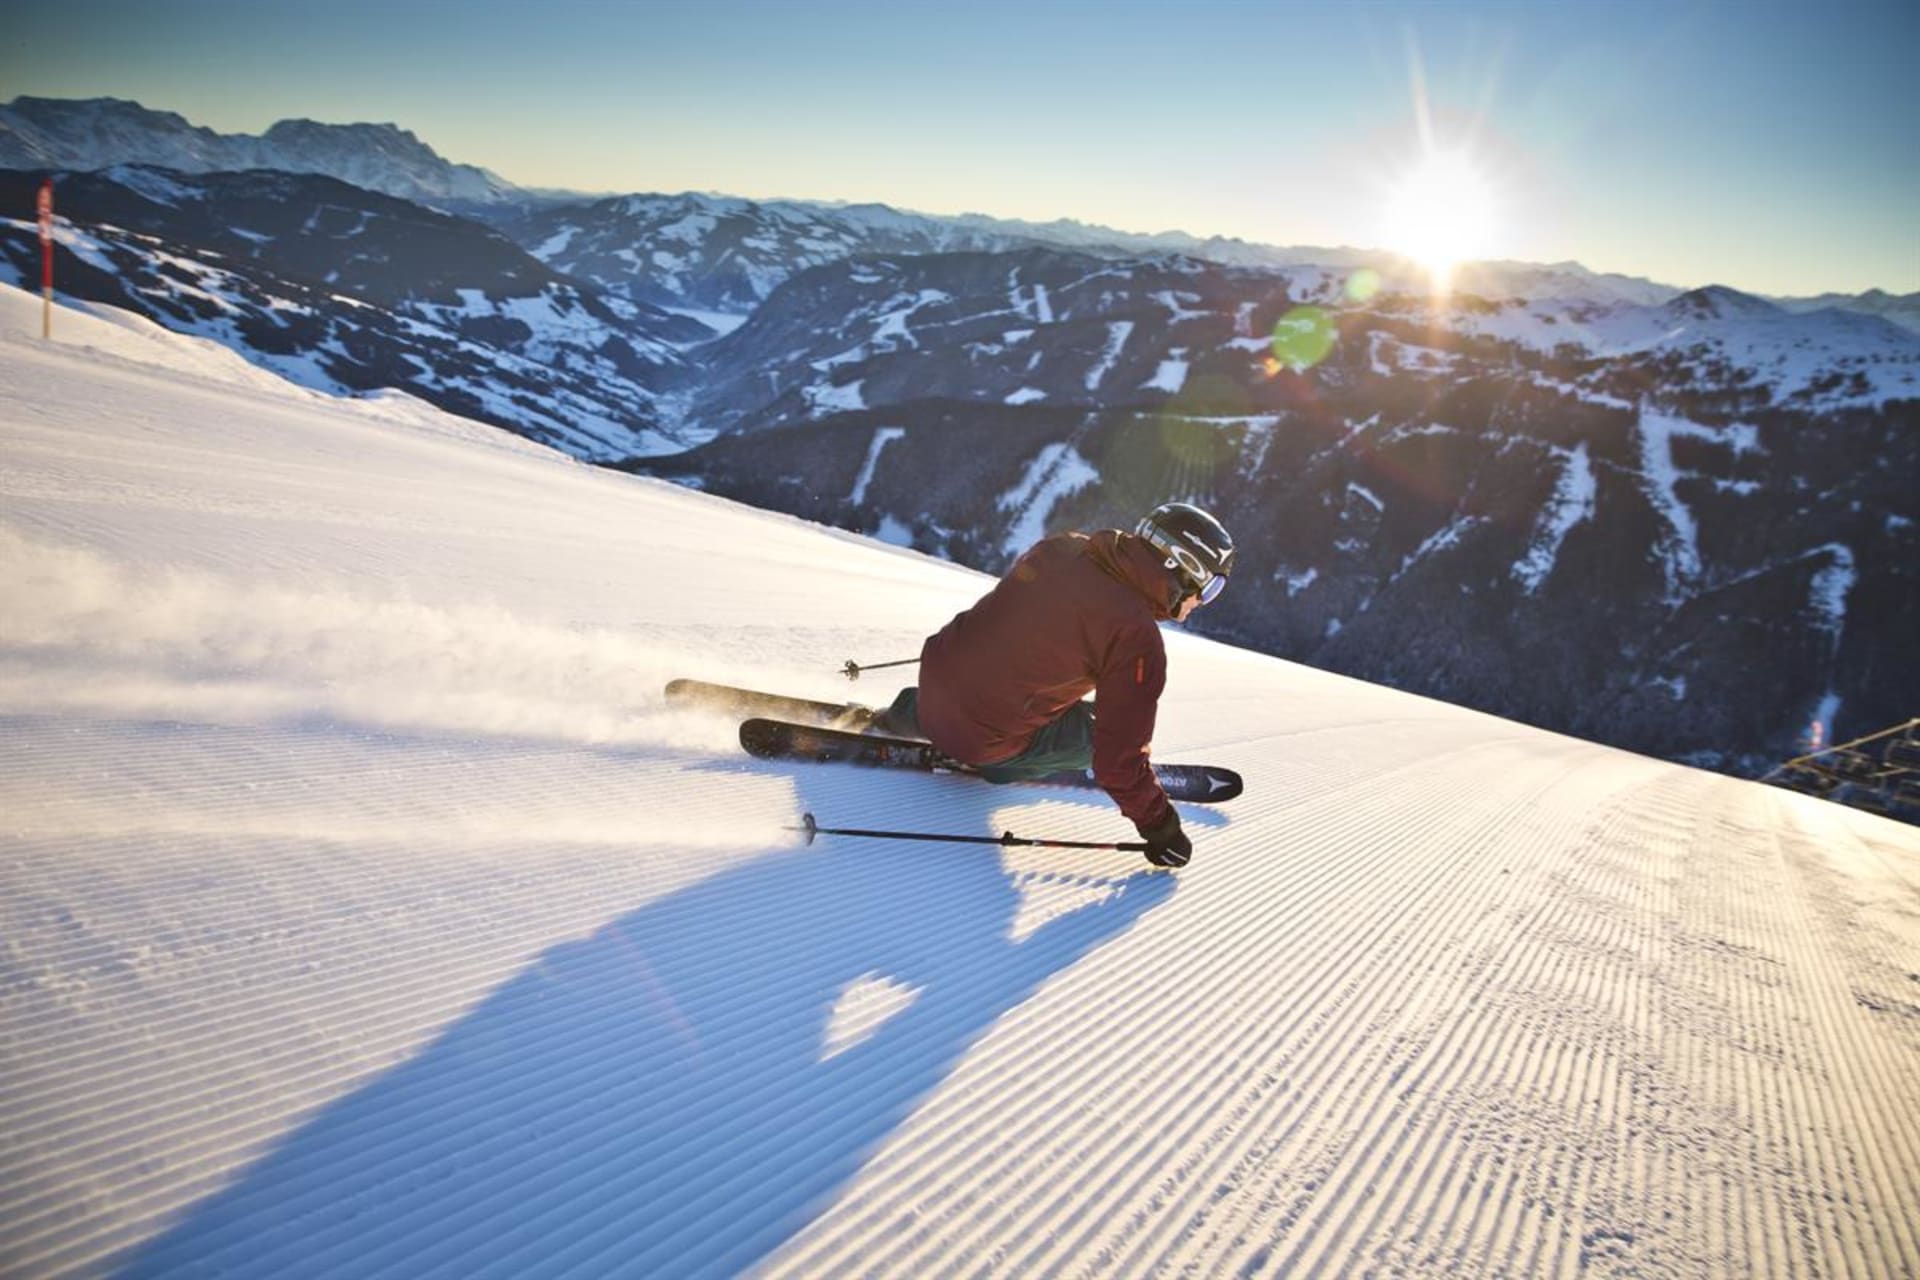 Středisko Saalbach-Hinterglemm nabízí špičkové lyžování